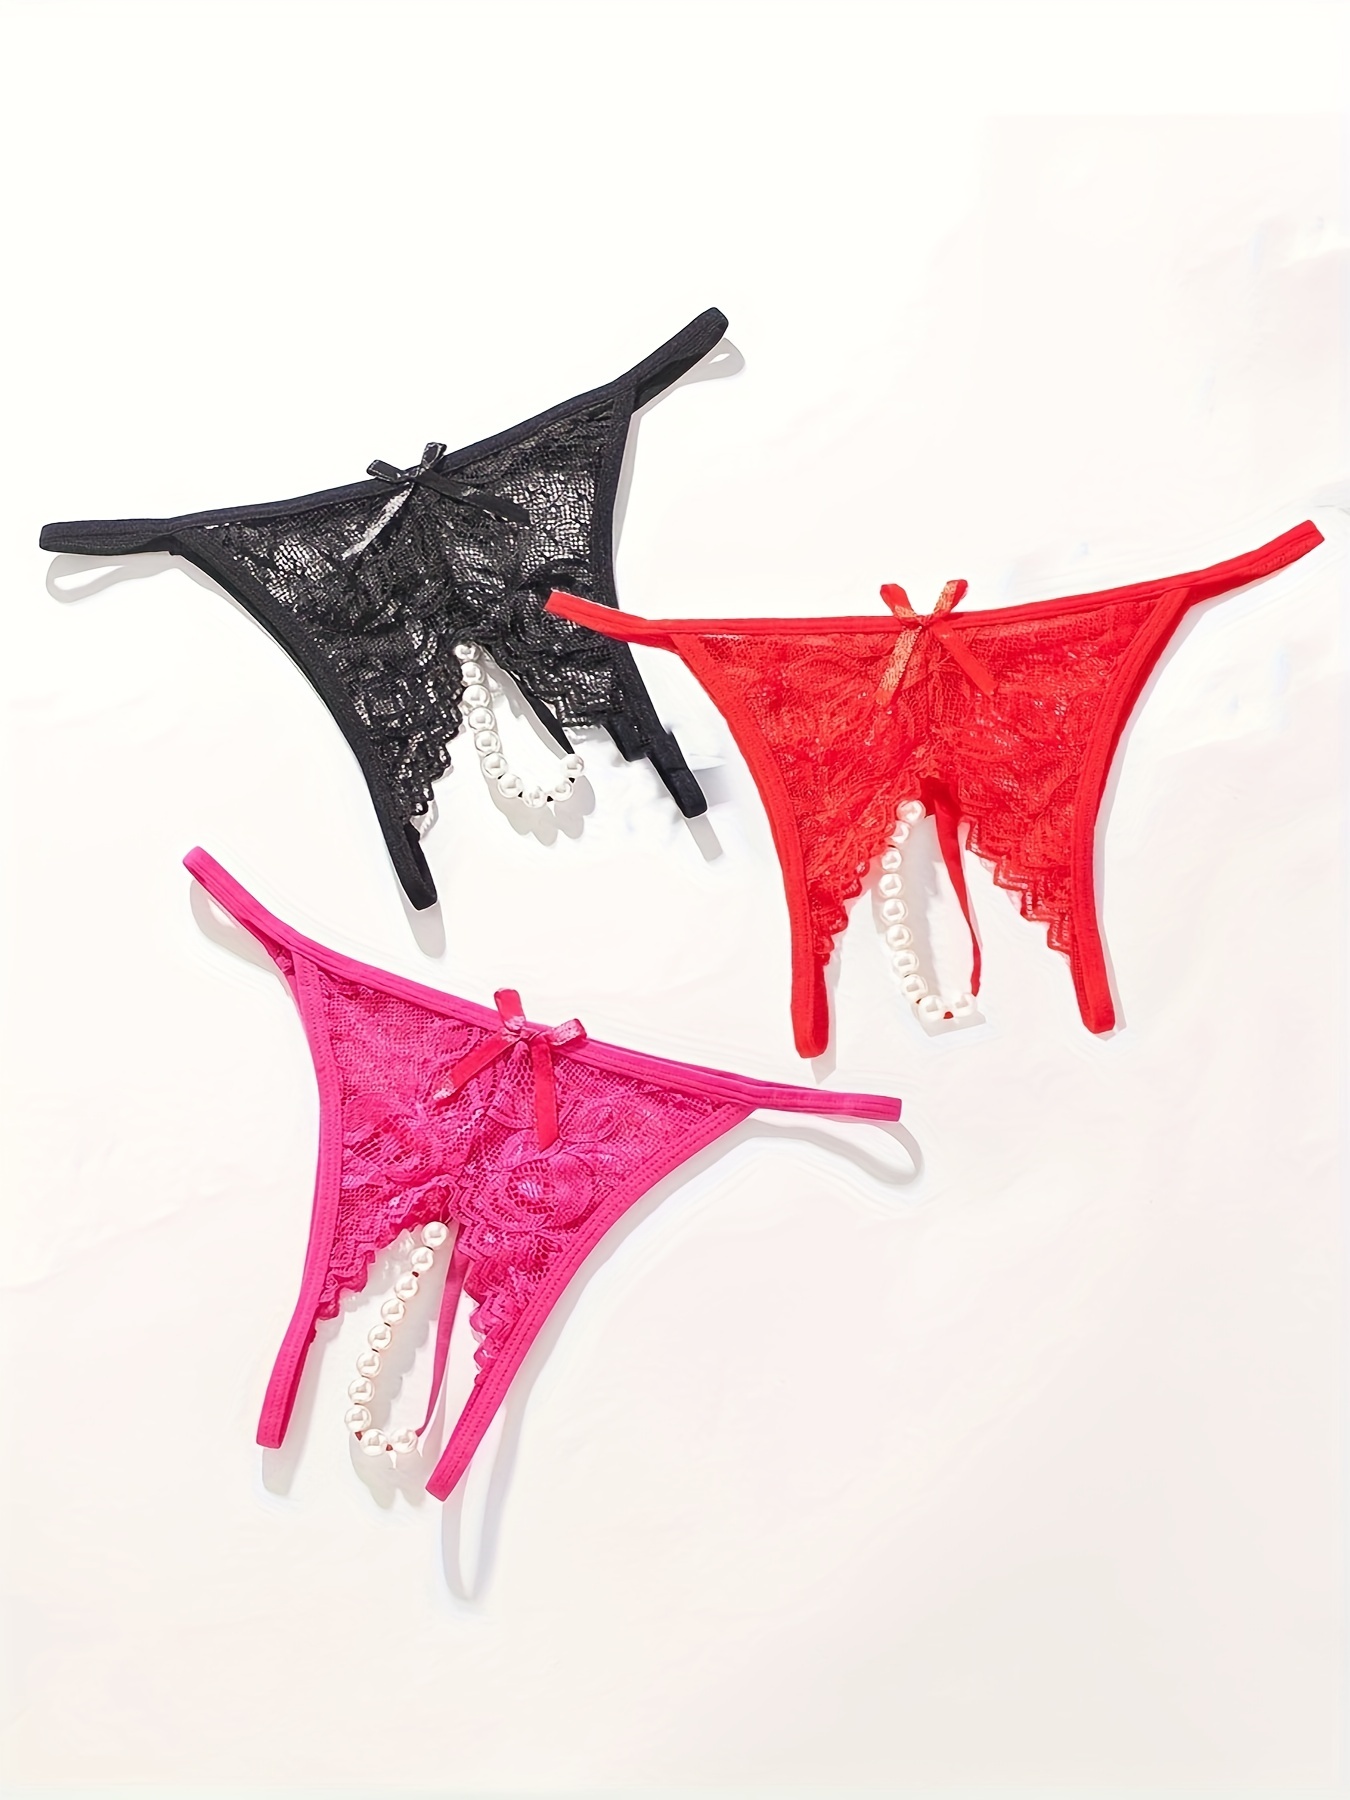 Women Open Crotch Lingerie Lace Panties Plus size G-Strings Bow